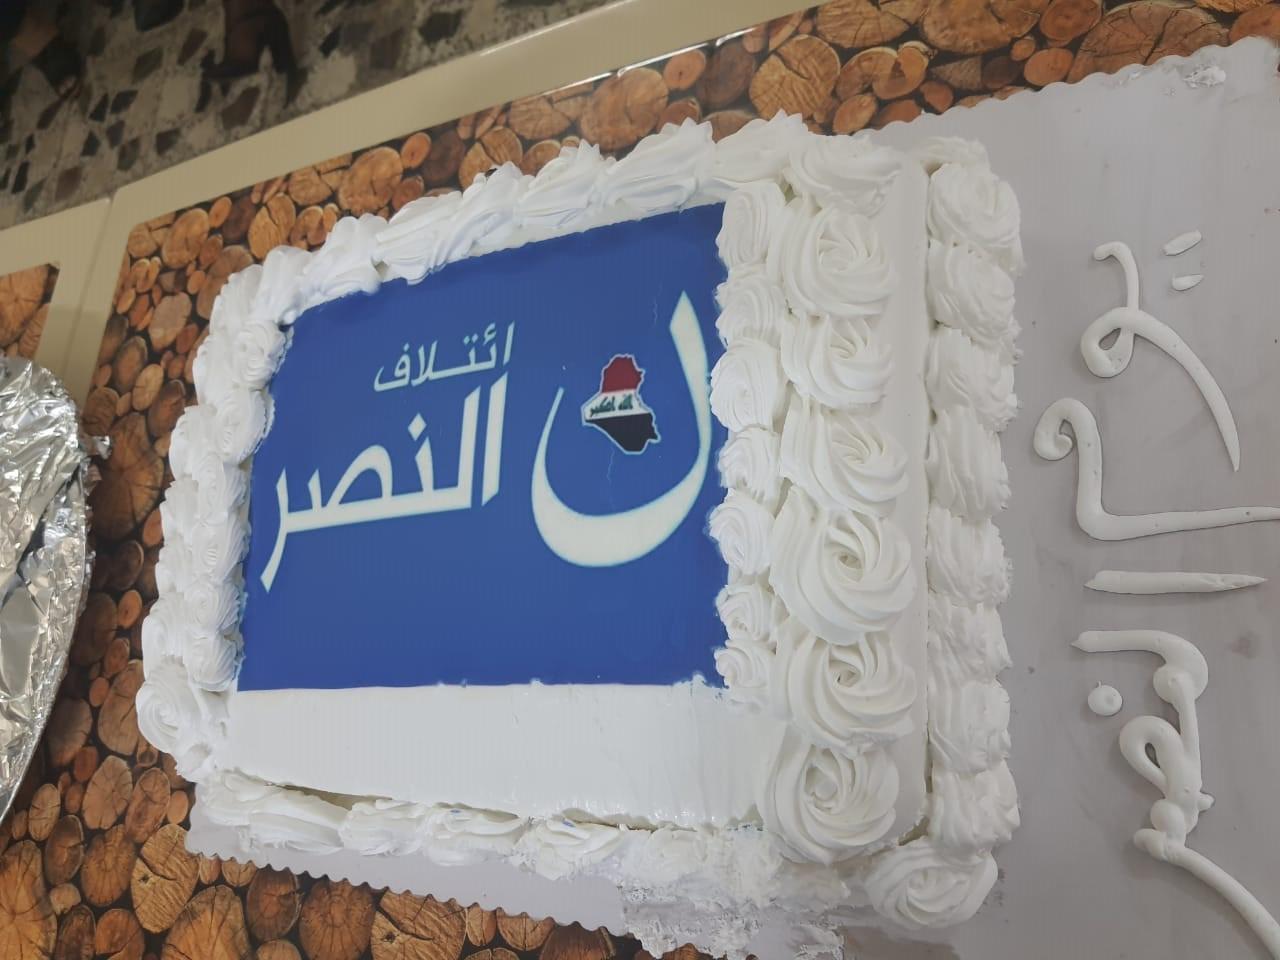 مكتب المرأة في إئتلاف النصر يقيم إحتفالية بمناسبة الذكرى الثالثة لإعلان النصر